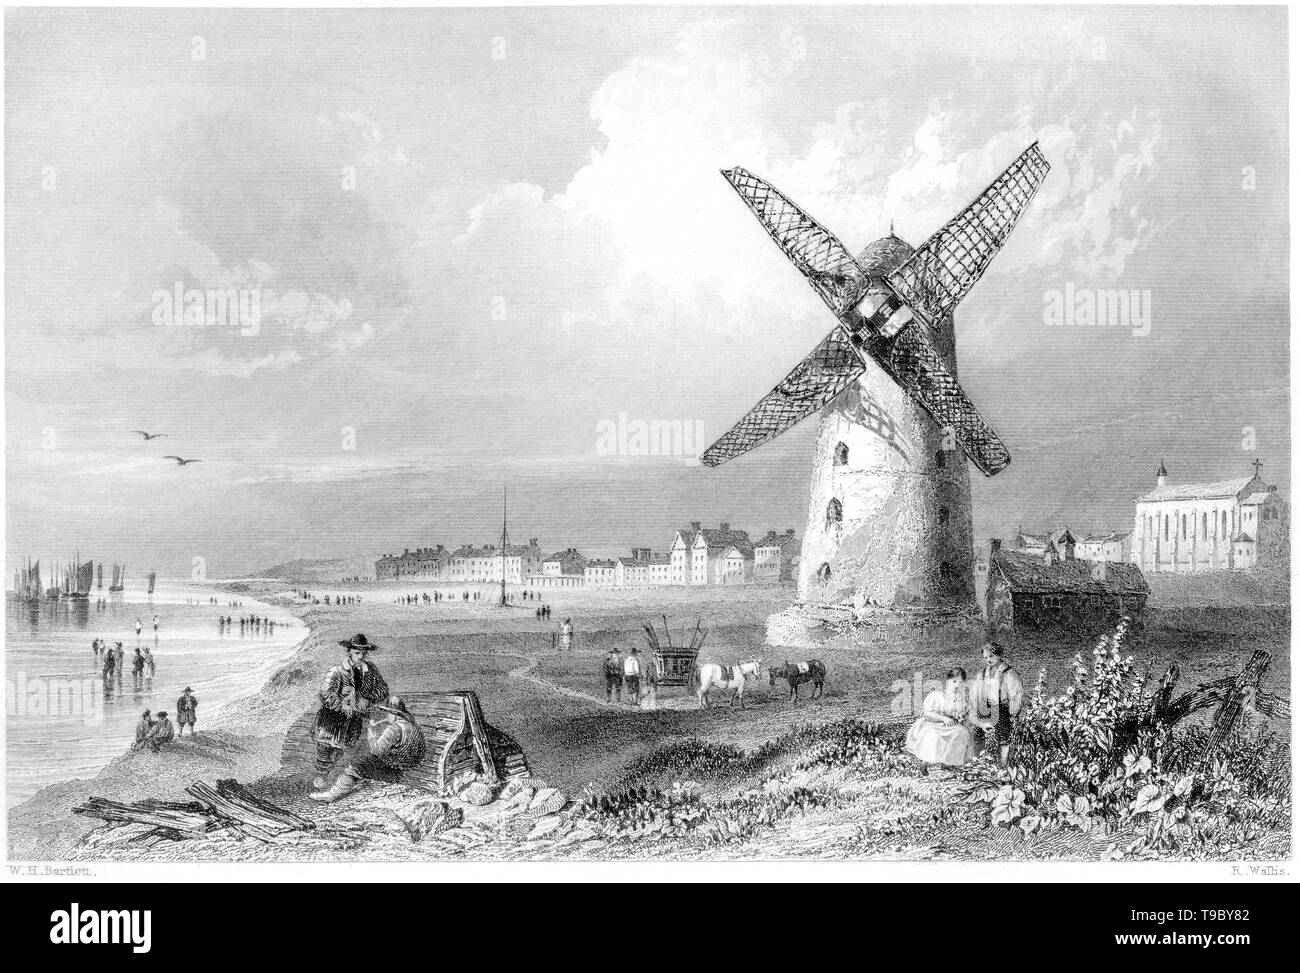 Ein Kupferstich von Lytham St Annes), Lancashire gescannt und in hoher Auflösung aus einem Buch 1842 veröffentlicht. Glaubten copyright frei. Stockfoto